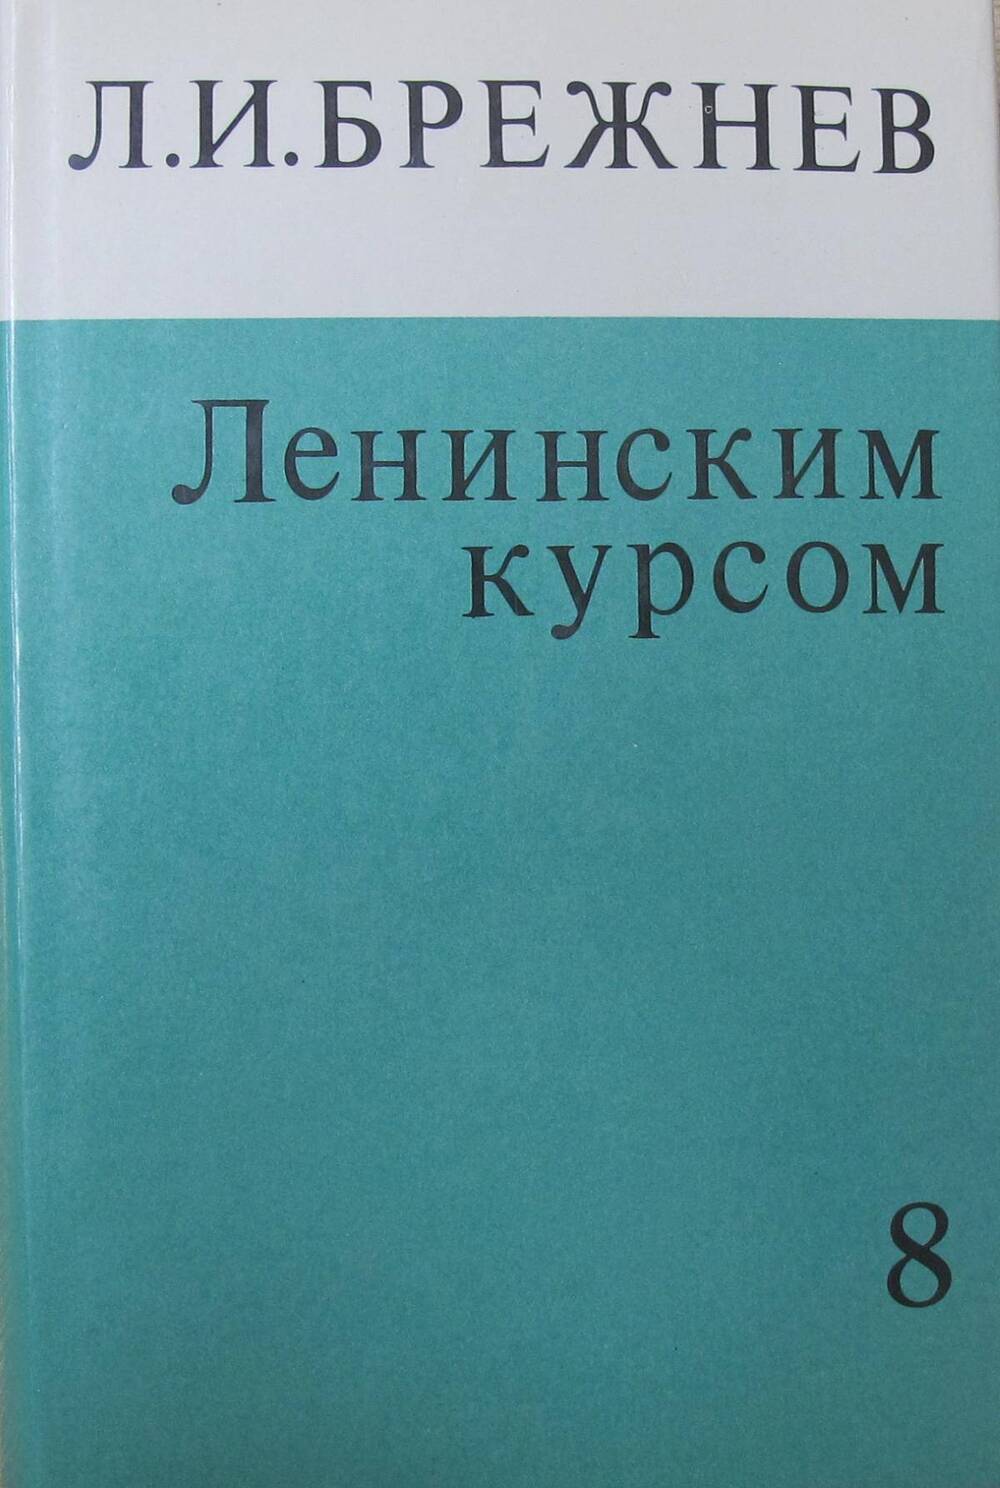 Книга Ленинским курсом. Речи и статьи. Том 8.